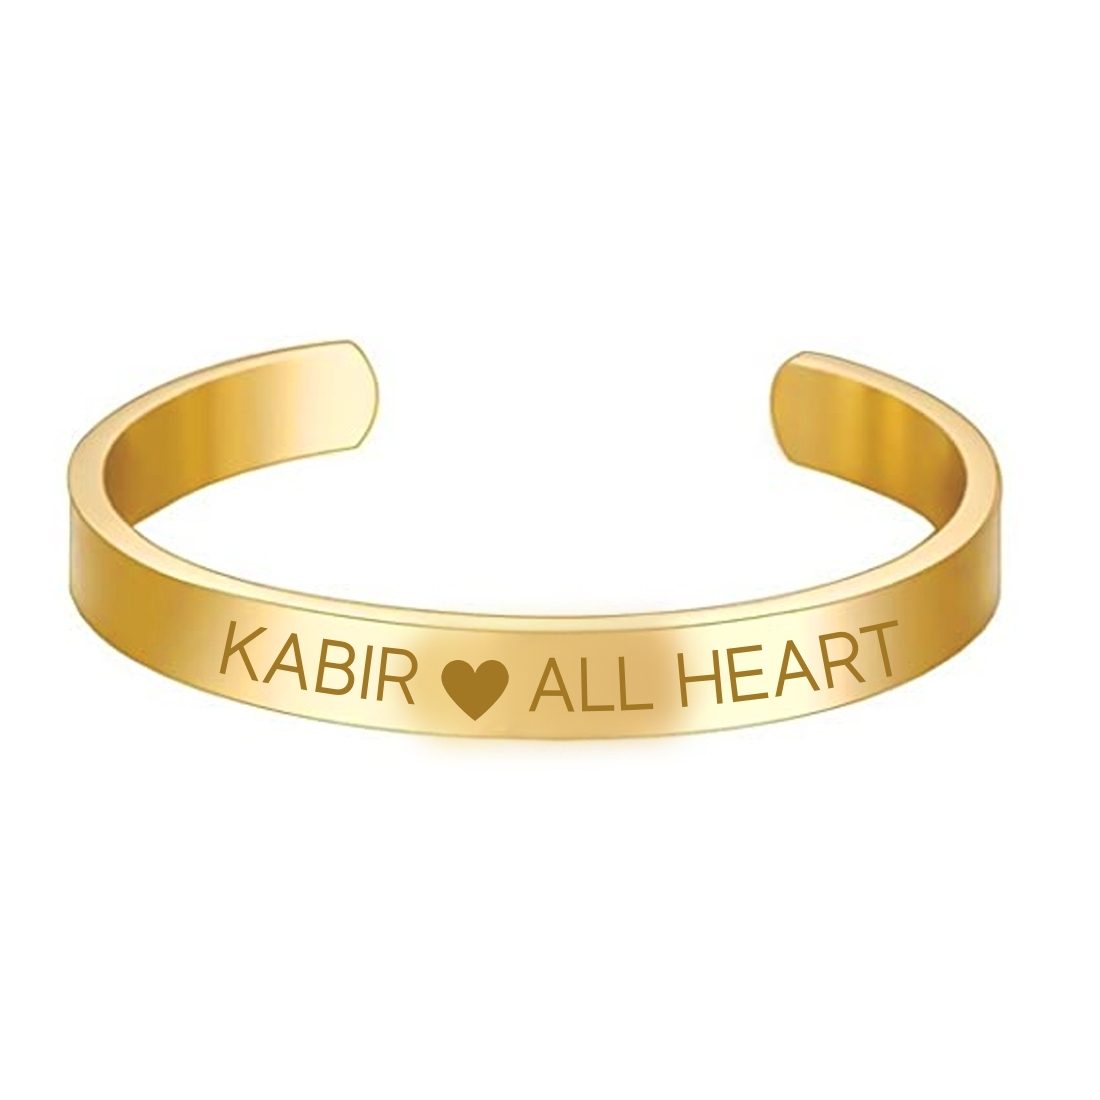 Personalised Engraved Name Bracelet Custom Heart India | Ubuy